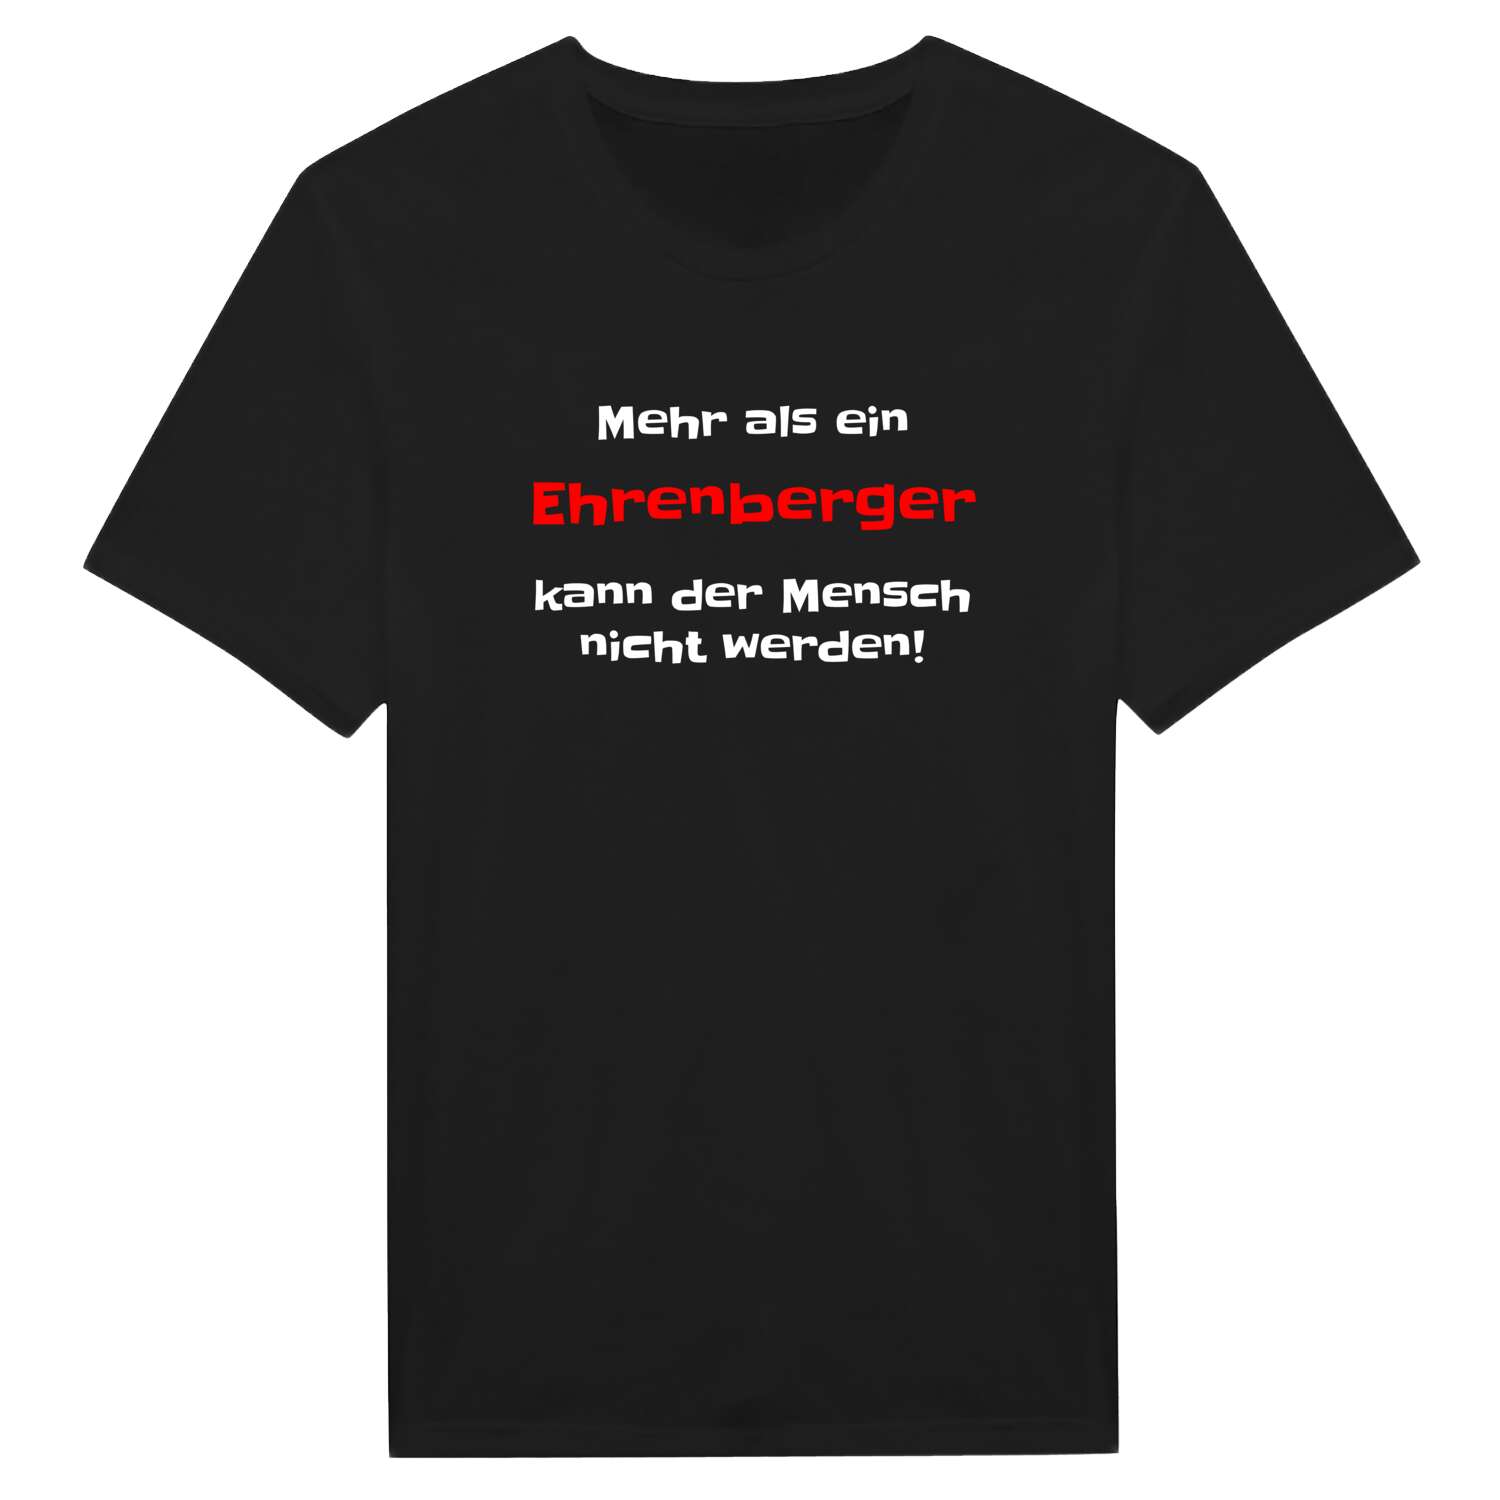 Ehrenberg T-Shirt »Mehr als ein«